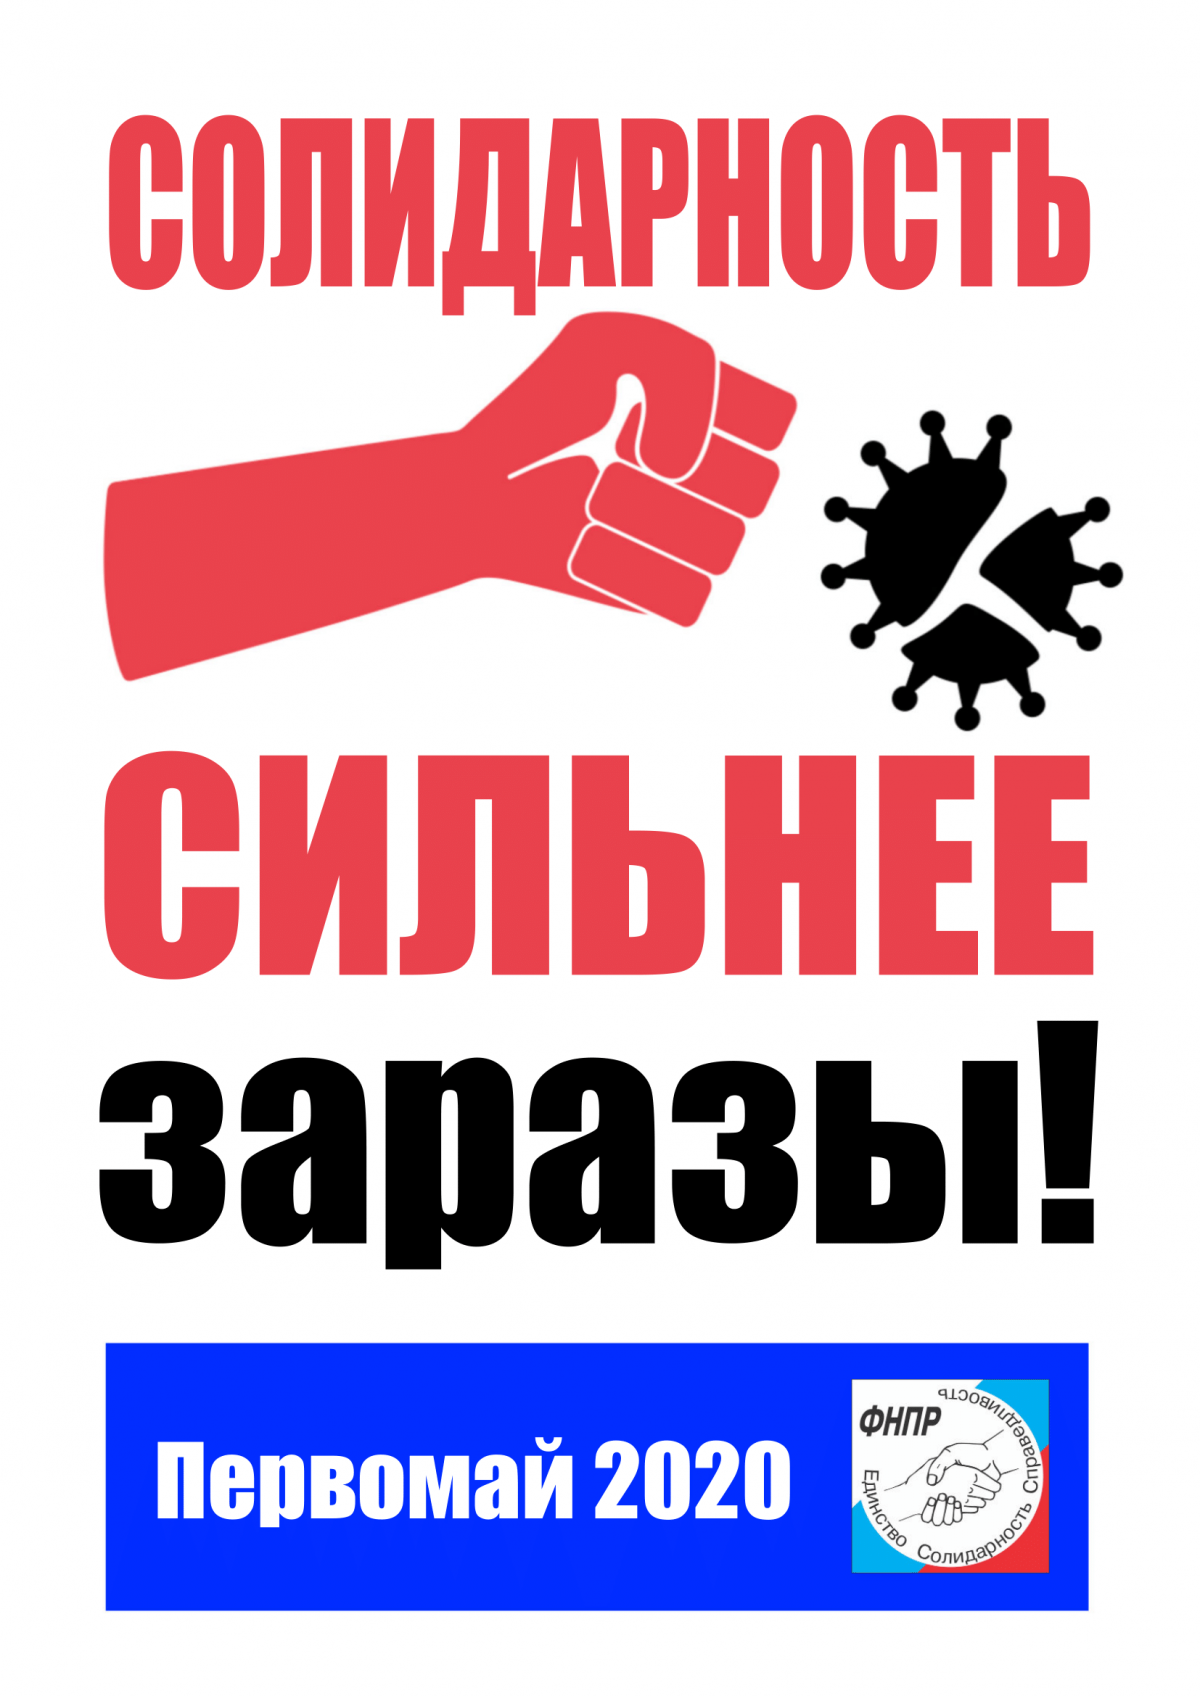 Официальный логотип Первомайской акции ФНПР - Новости организации